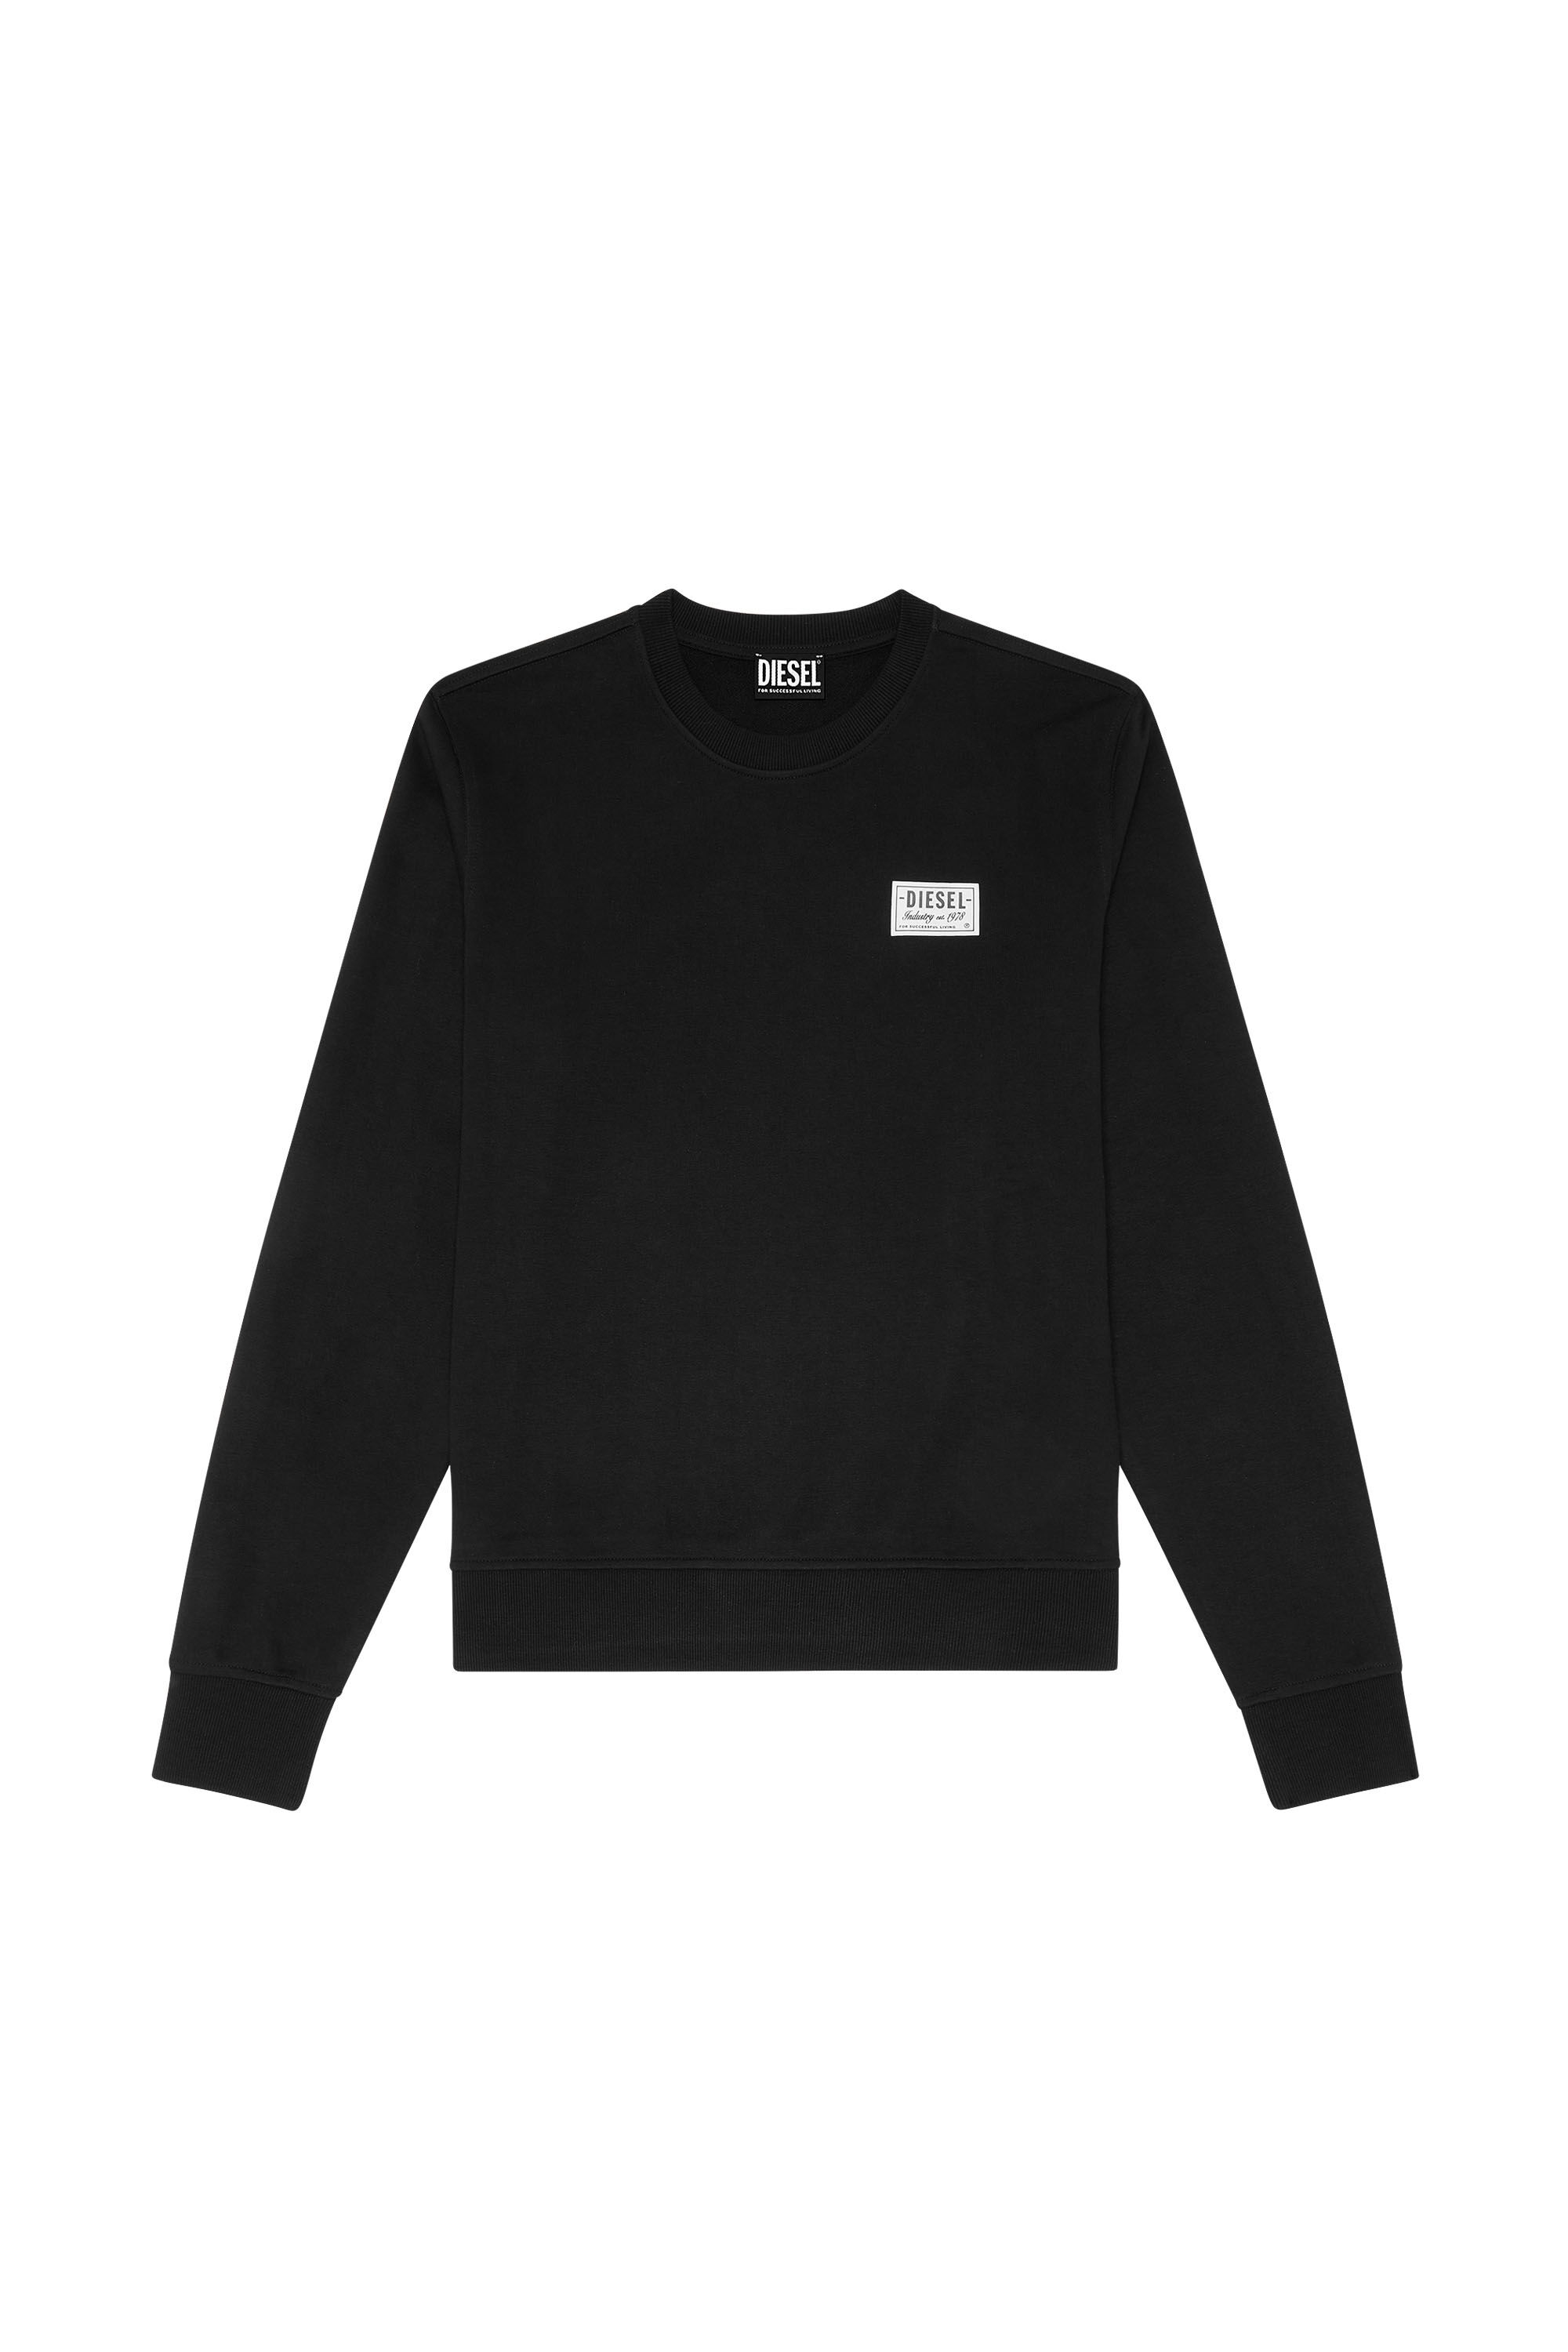 Diesel - S-GINN-SP, Man Sweatshirt with vintage logo in Black - Image 2